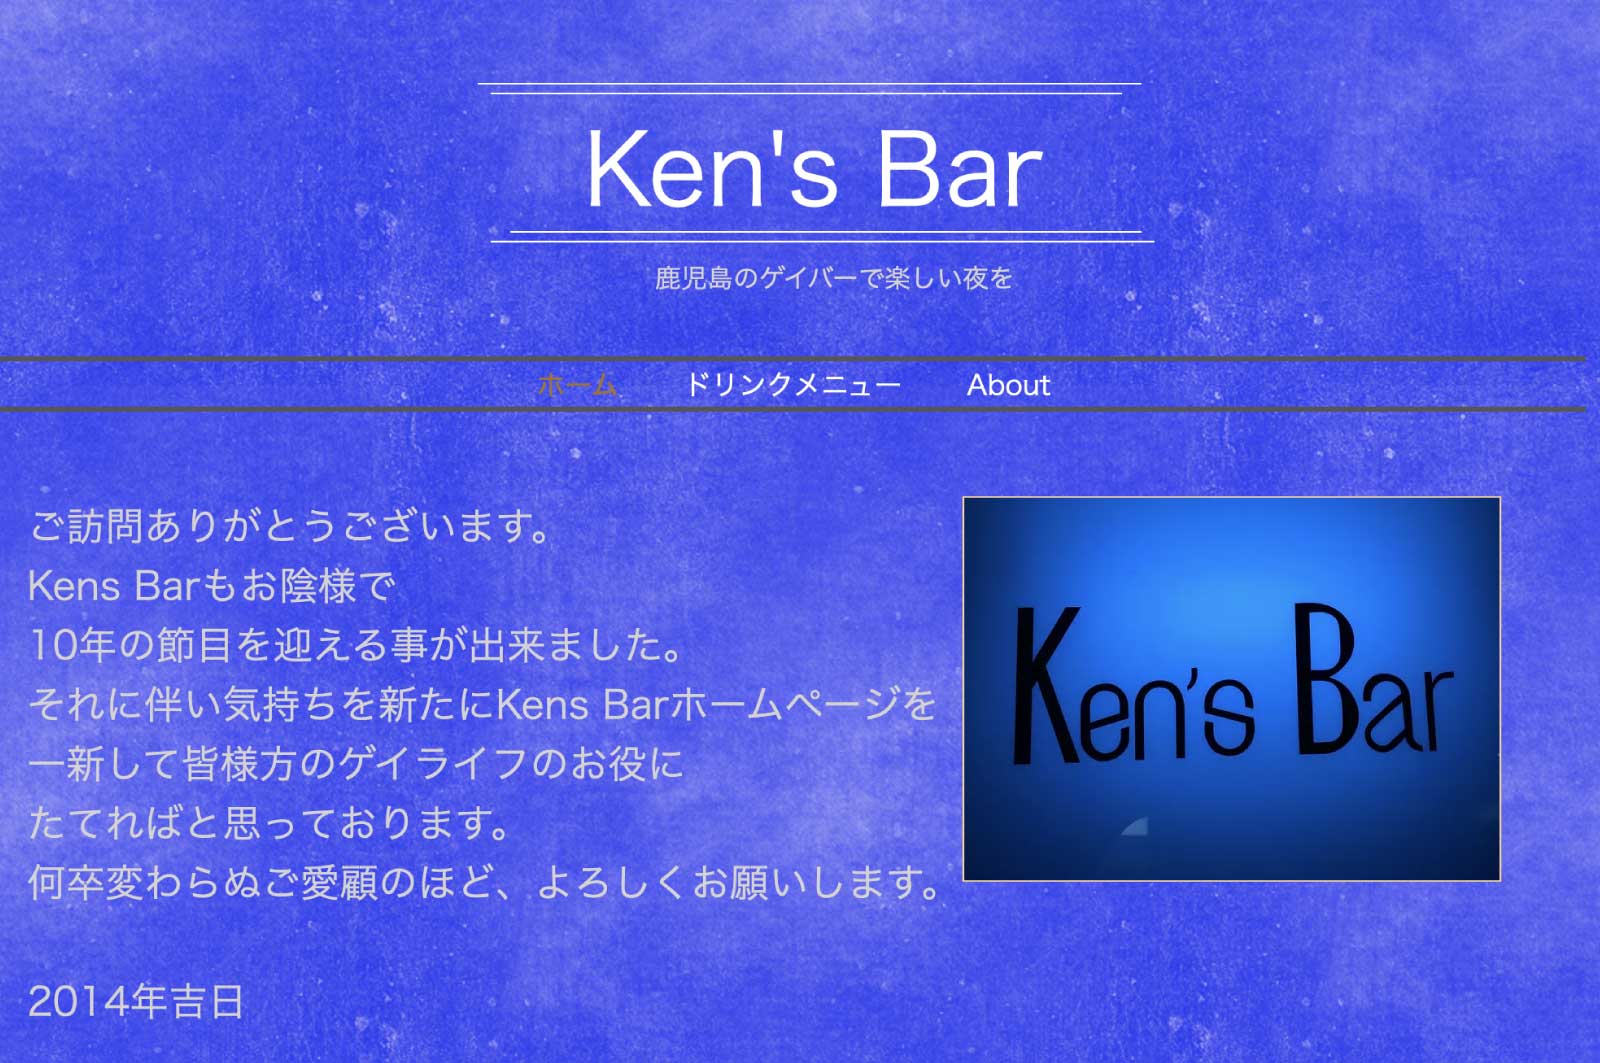 Ken's Bar